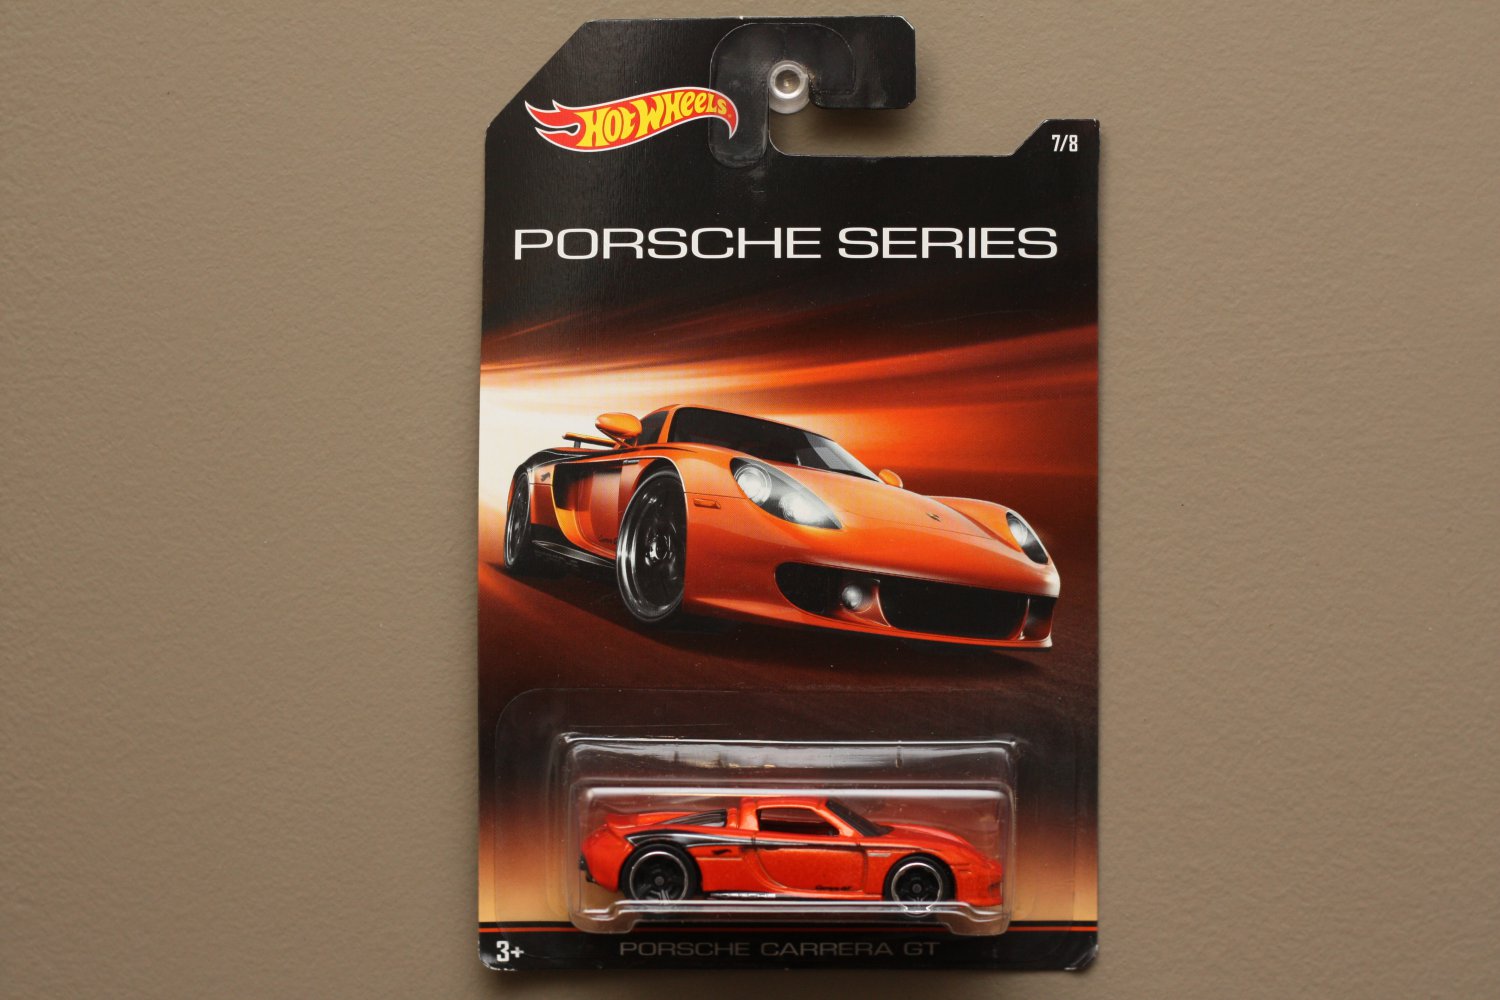 2015 Hot Wheels PORSCHE Série Porsche Carrera GT #7 